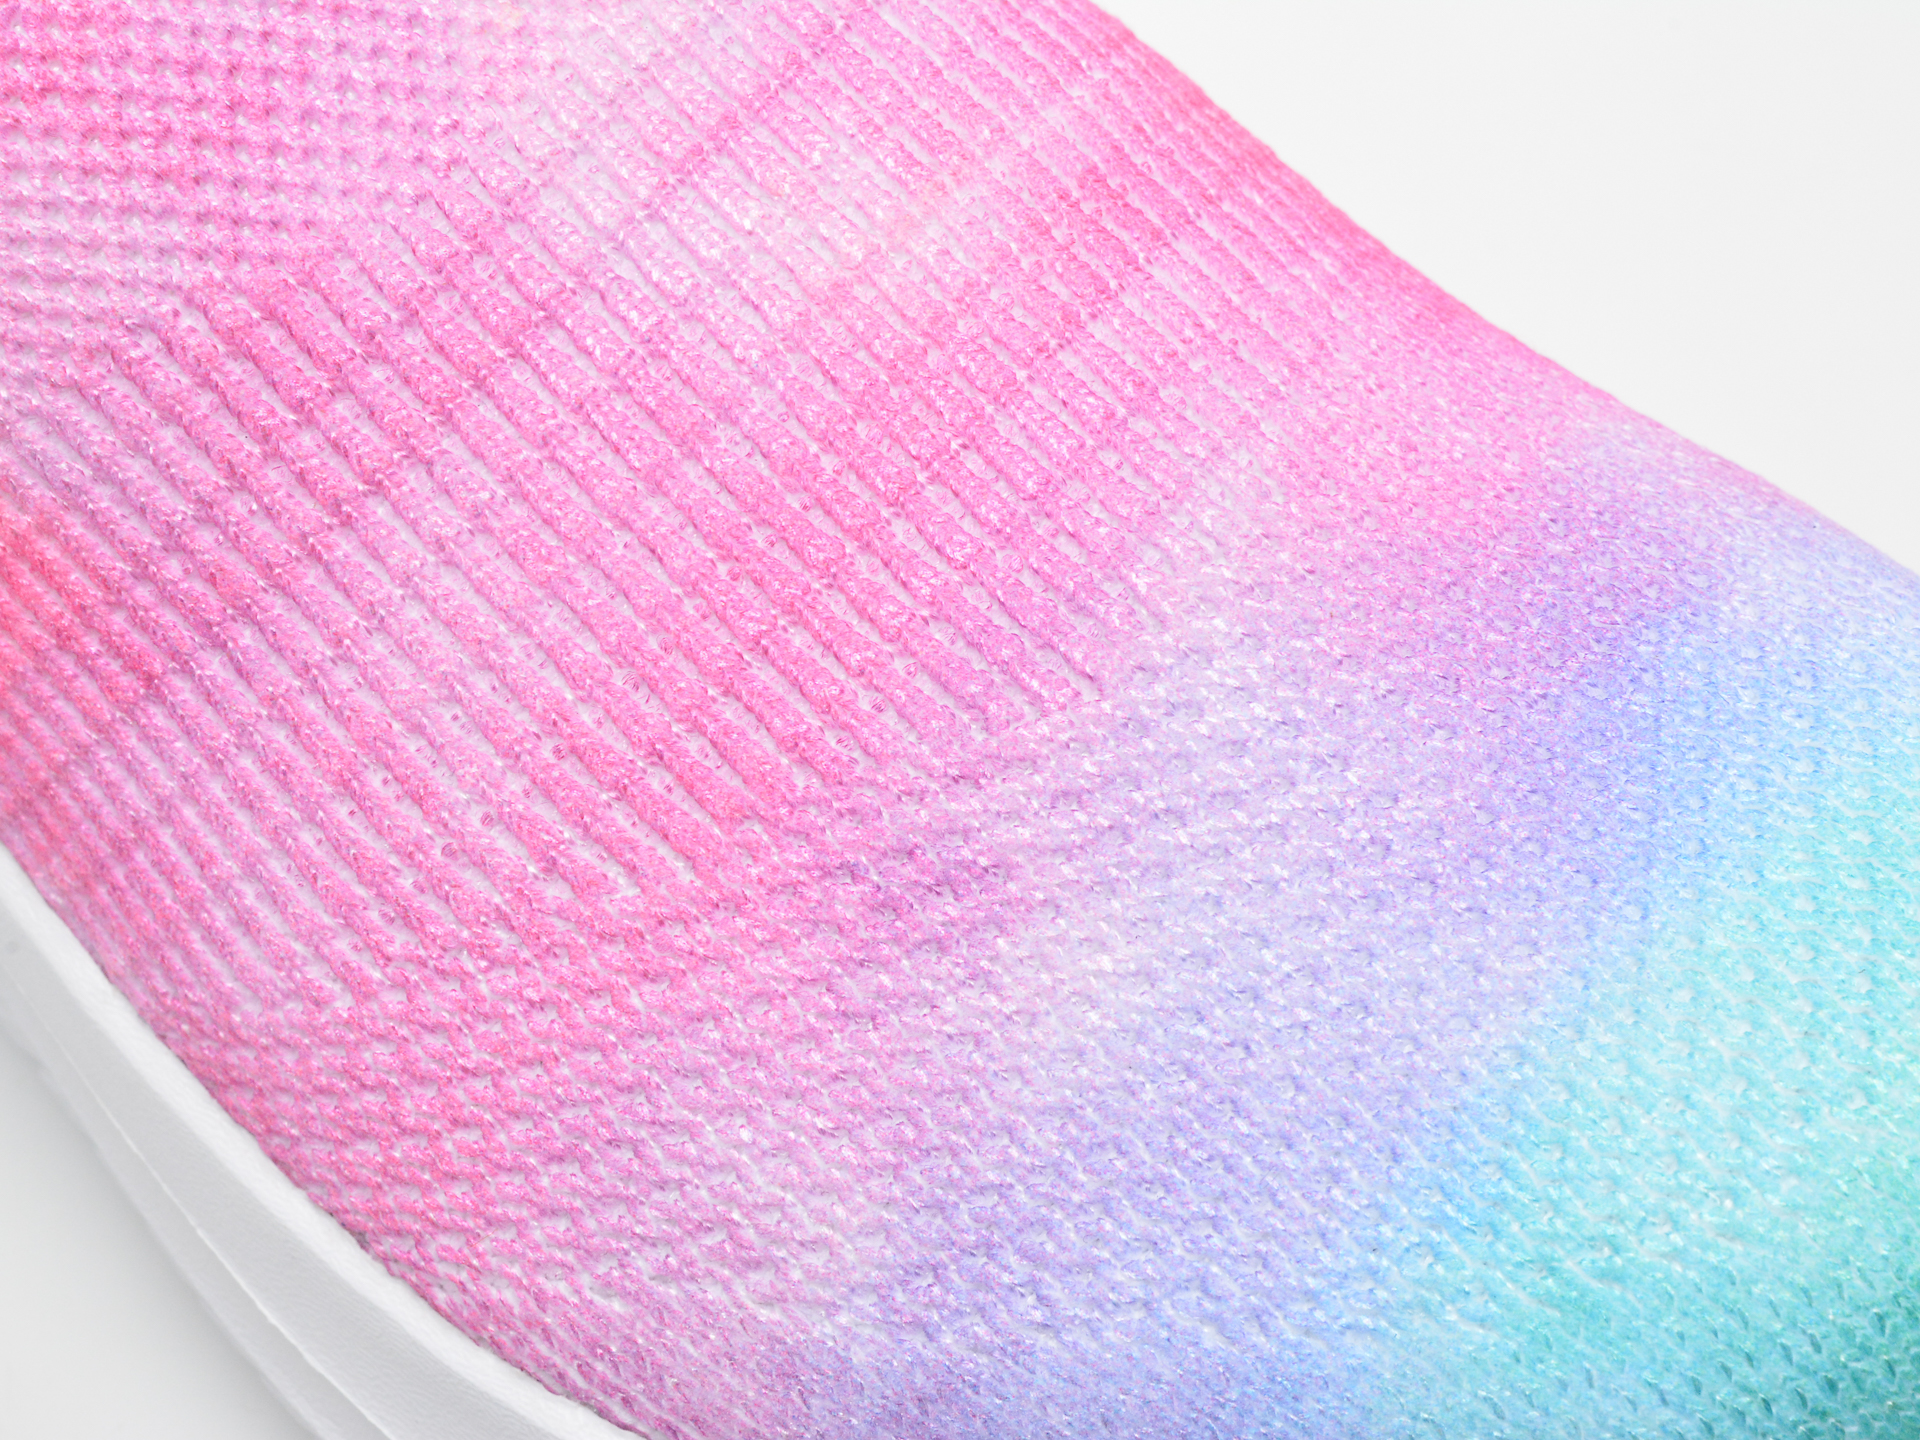 Poze Pantofi SKECHERS multicolor, 303803L, din material textil Otter